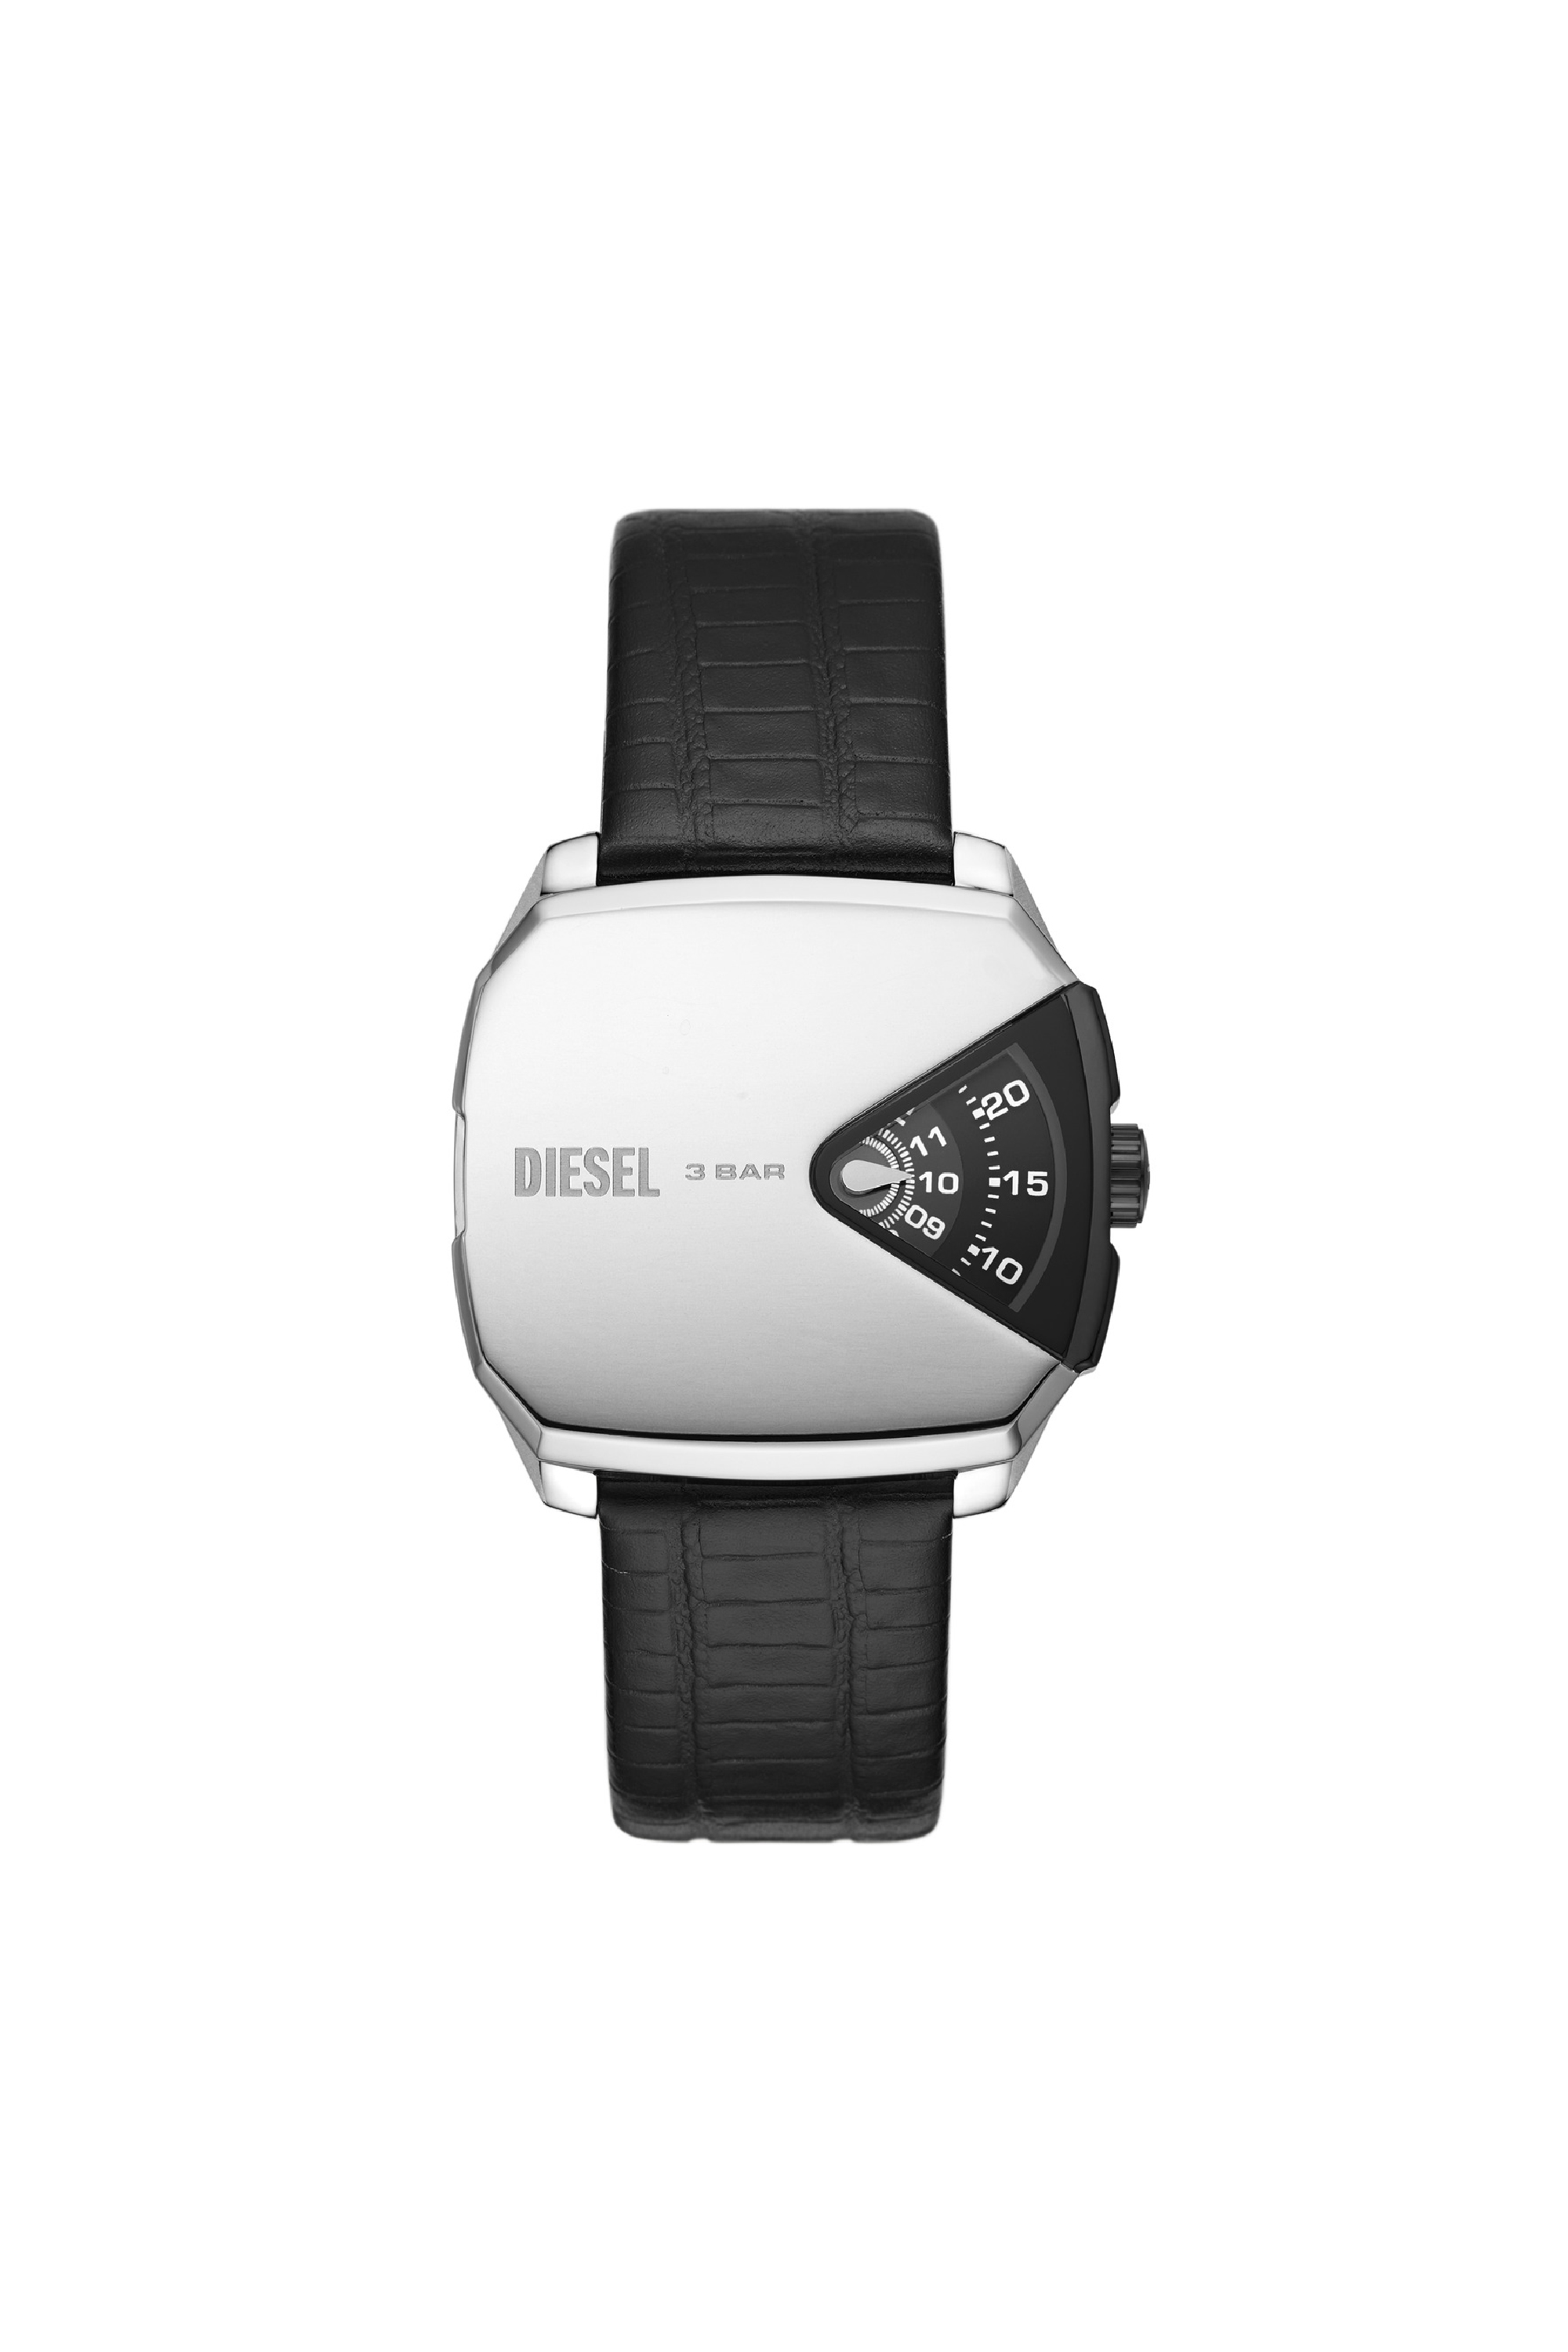 Diesel - DZ2153, Noir - Image 1